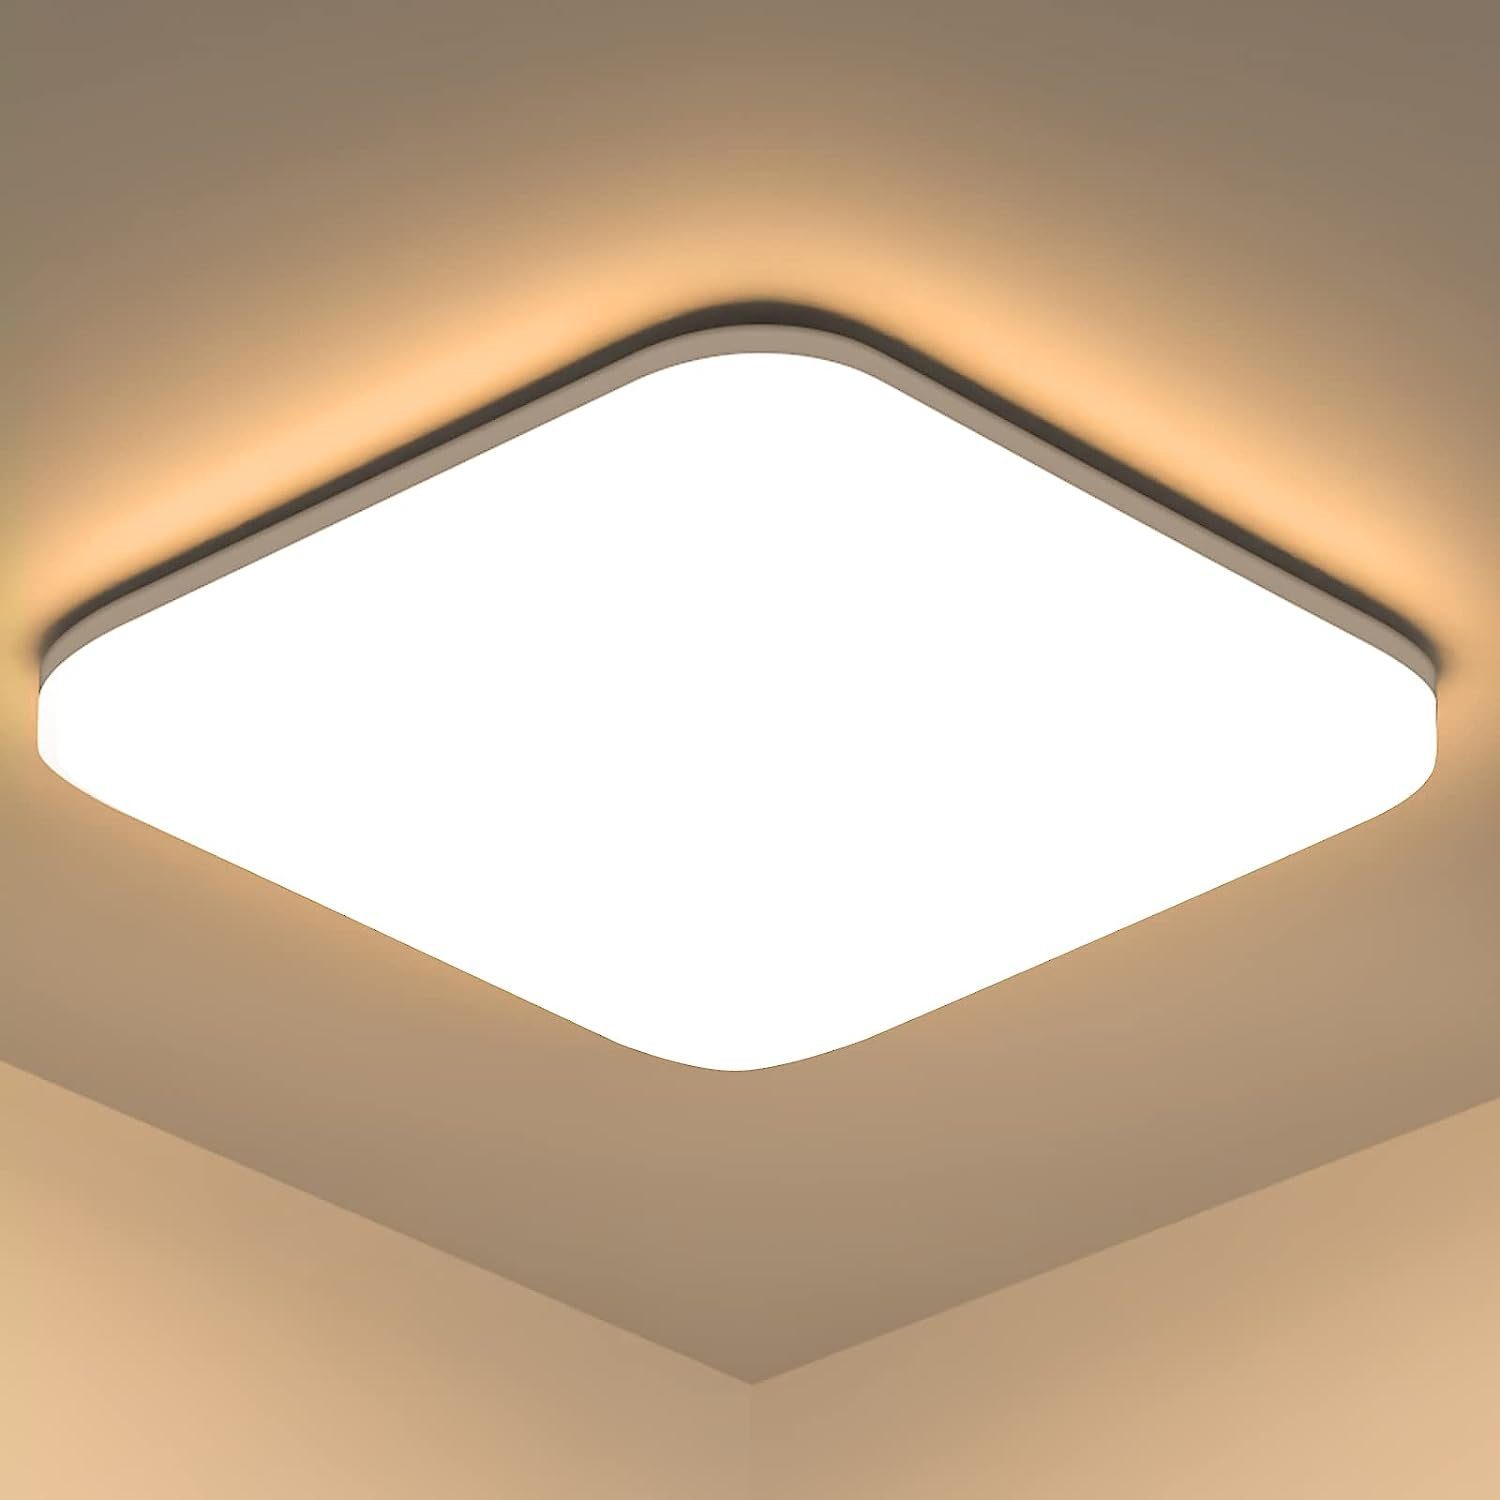 Daskoo Deckenleuchten 18W 1600LM IP54 LED Deckenlampe Wohnzimmer 22 x 22 cm, LED wechselbar, Warmweiß, Kaltweiß, LED Deckenleuchte